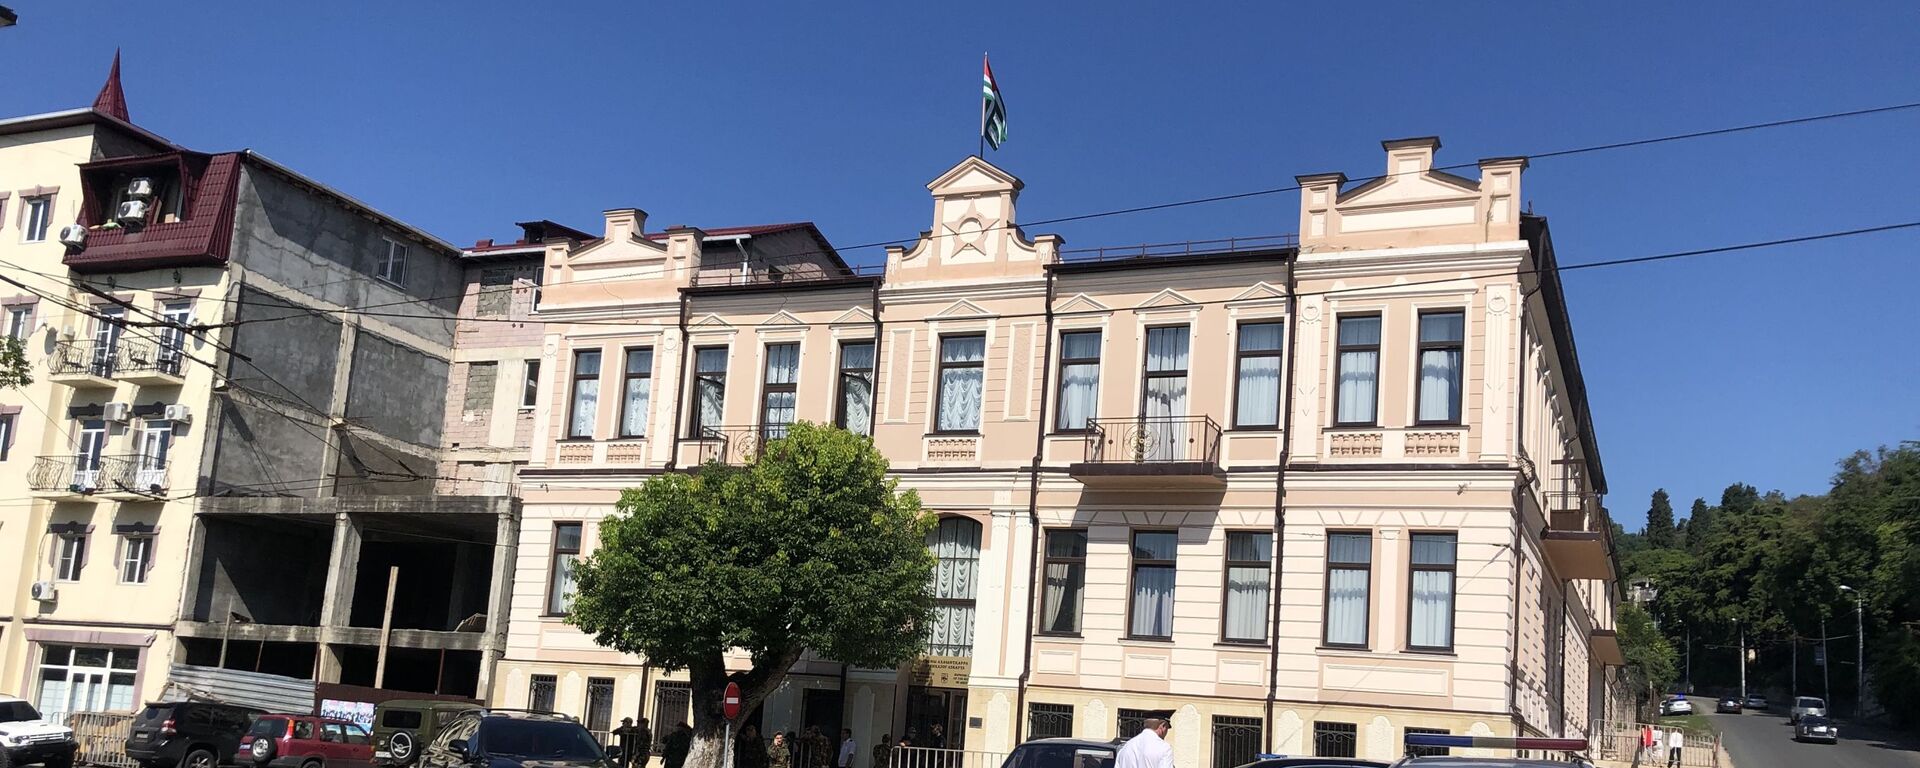 Здание Верховного суда Абхазии, 19 сентября 2019 - Sputnik Аҧсны, 1920, 15.03.2021